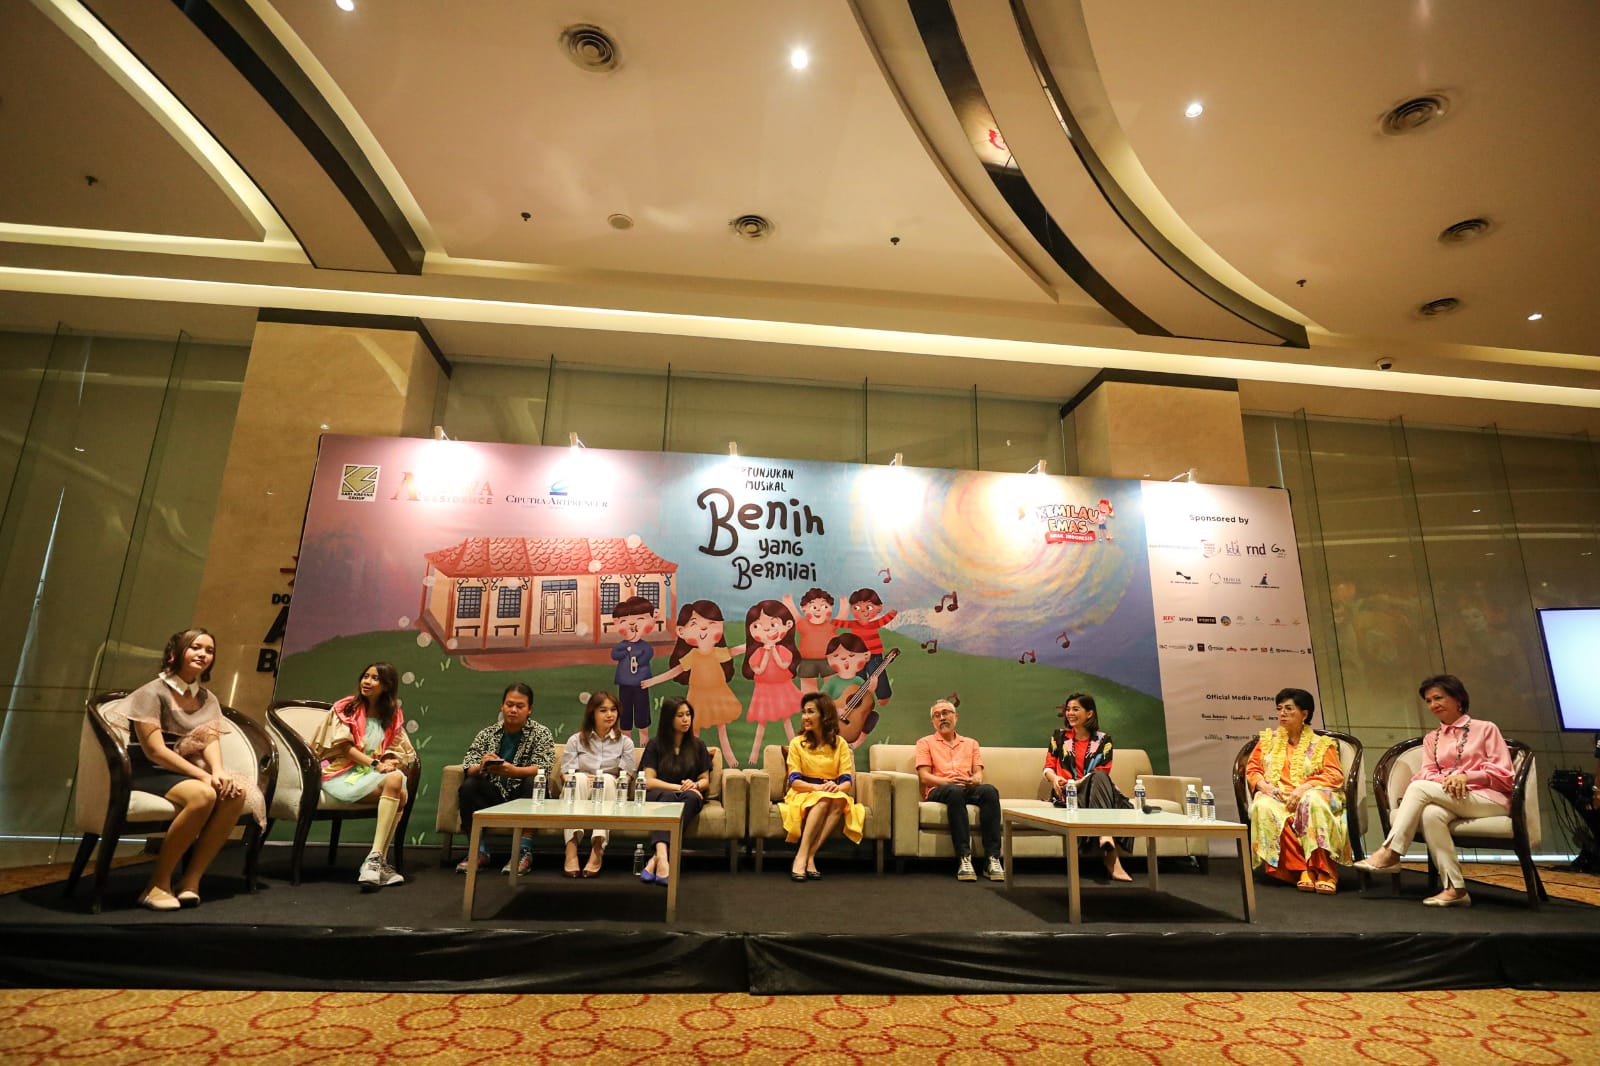 Konferensi pers Benih Yang Bernilai di Ciputra Artpreneur, Jakarta, Kamis (6/7). (Sumber gambar: JIBI/Bisnis/Arief Hermawan P)